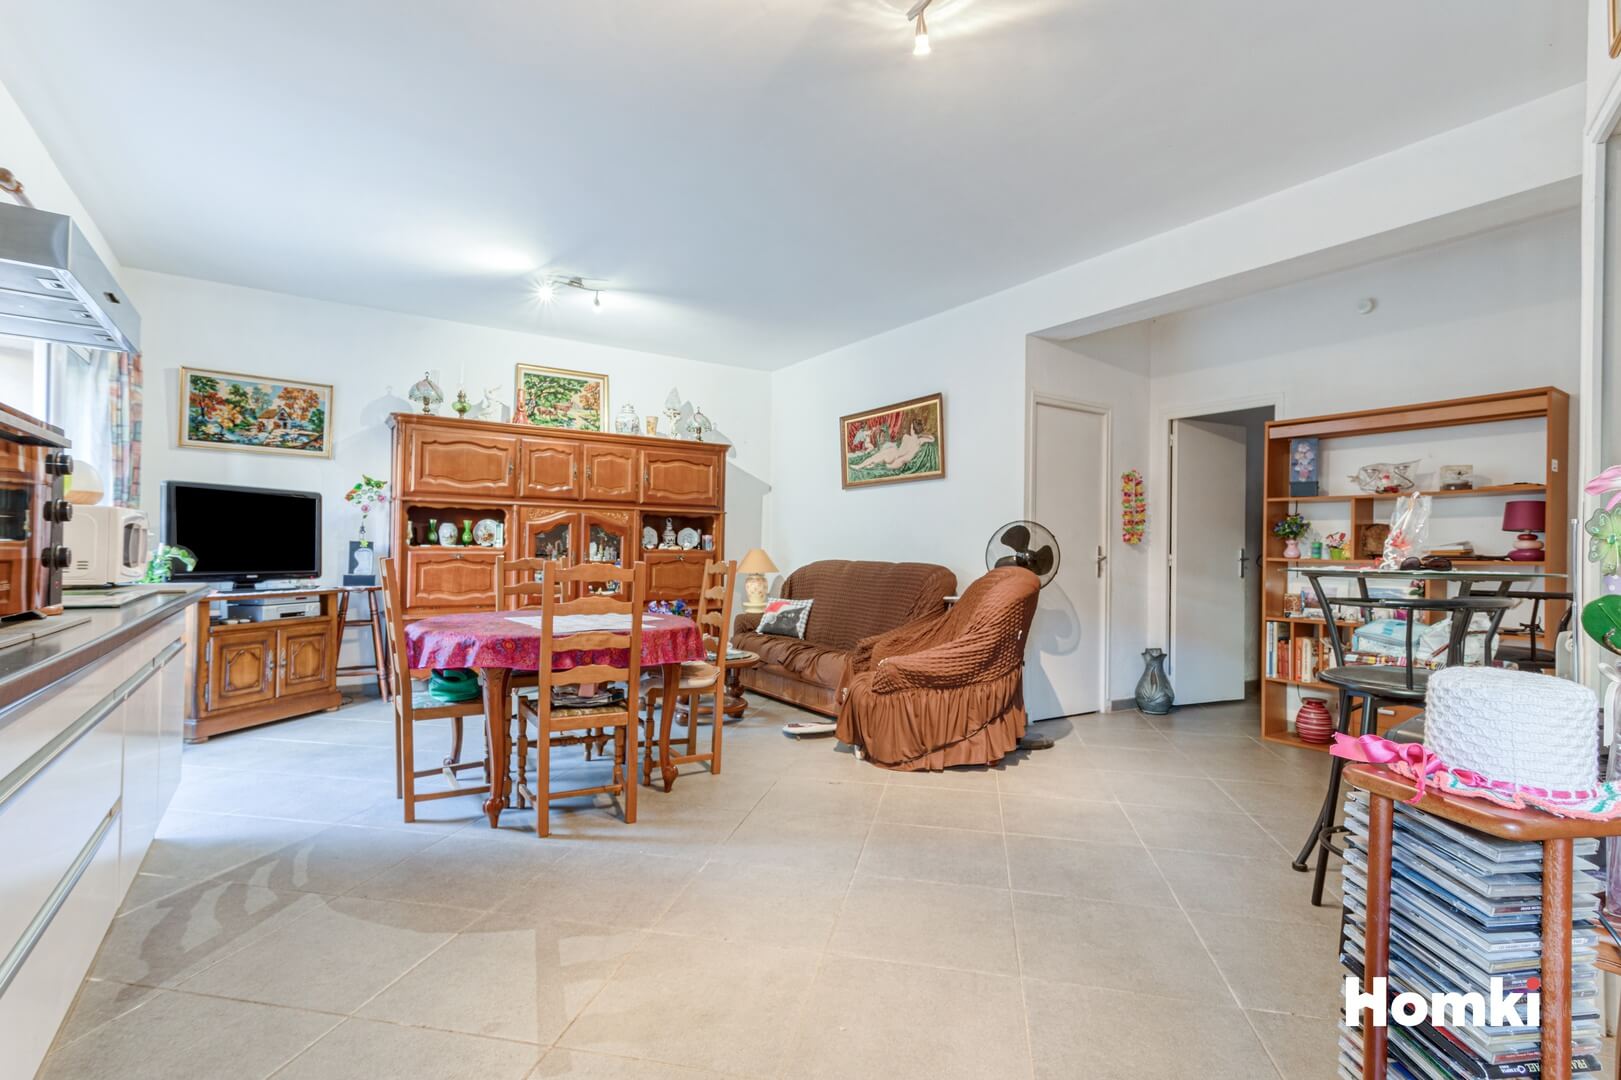 Homki - Vente Maison/villa  de 117.0 m² à Perpignan 66000